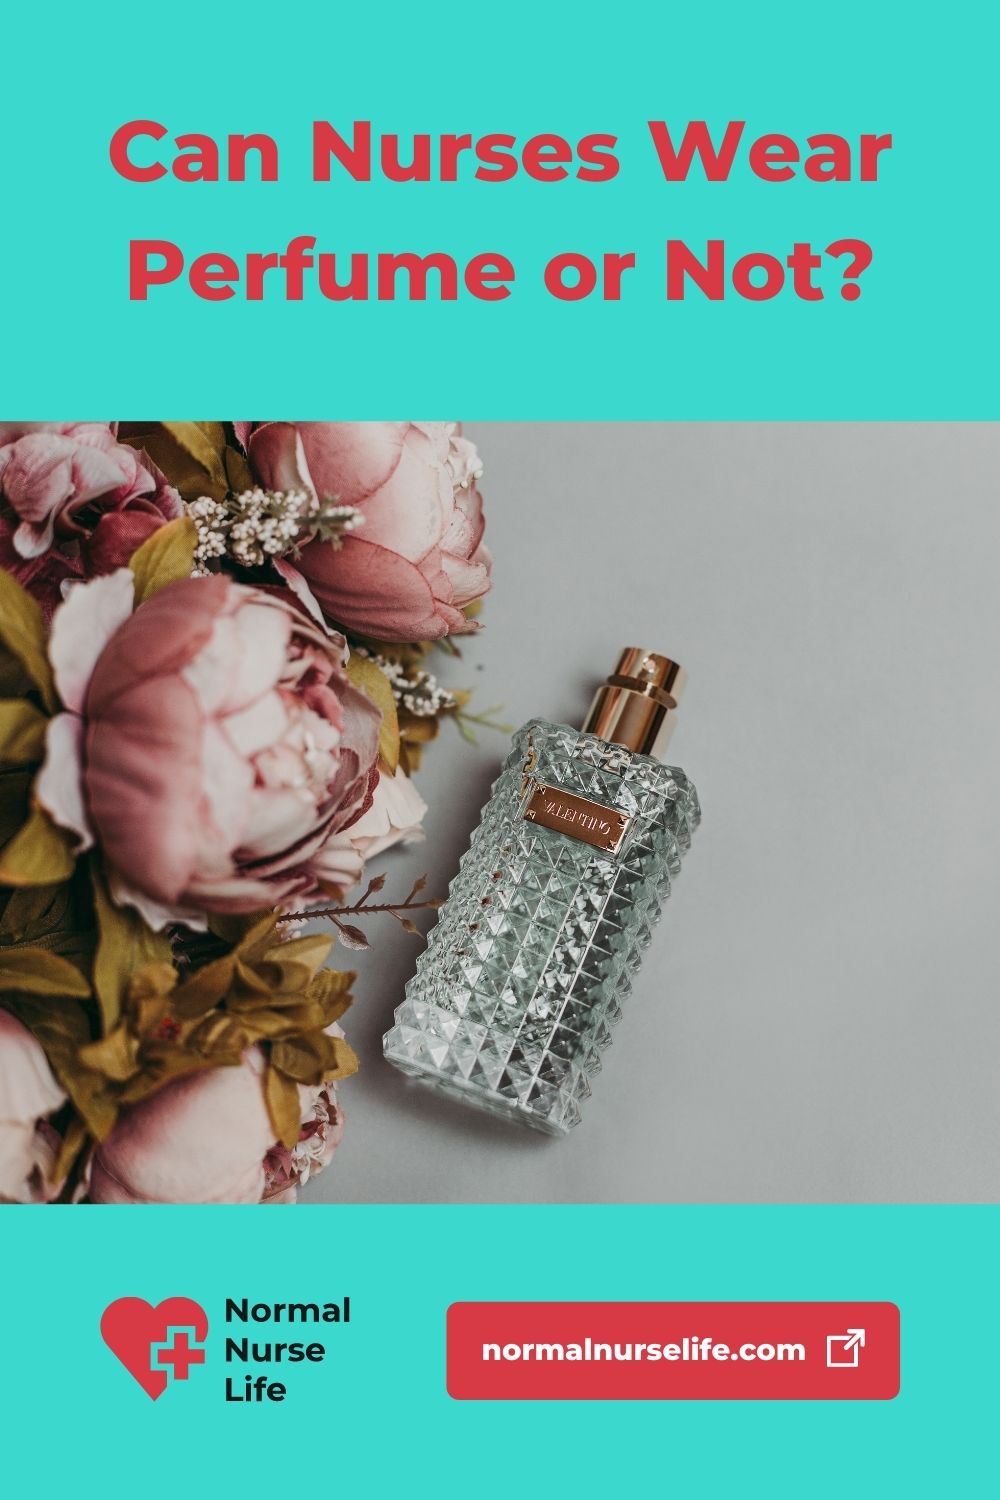 Can nurses wear perfume or fragrances